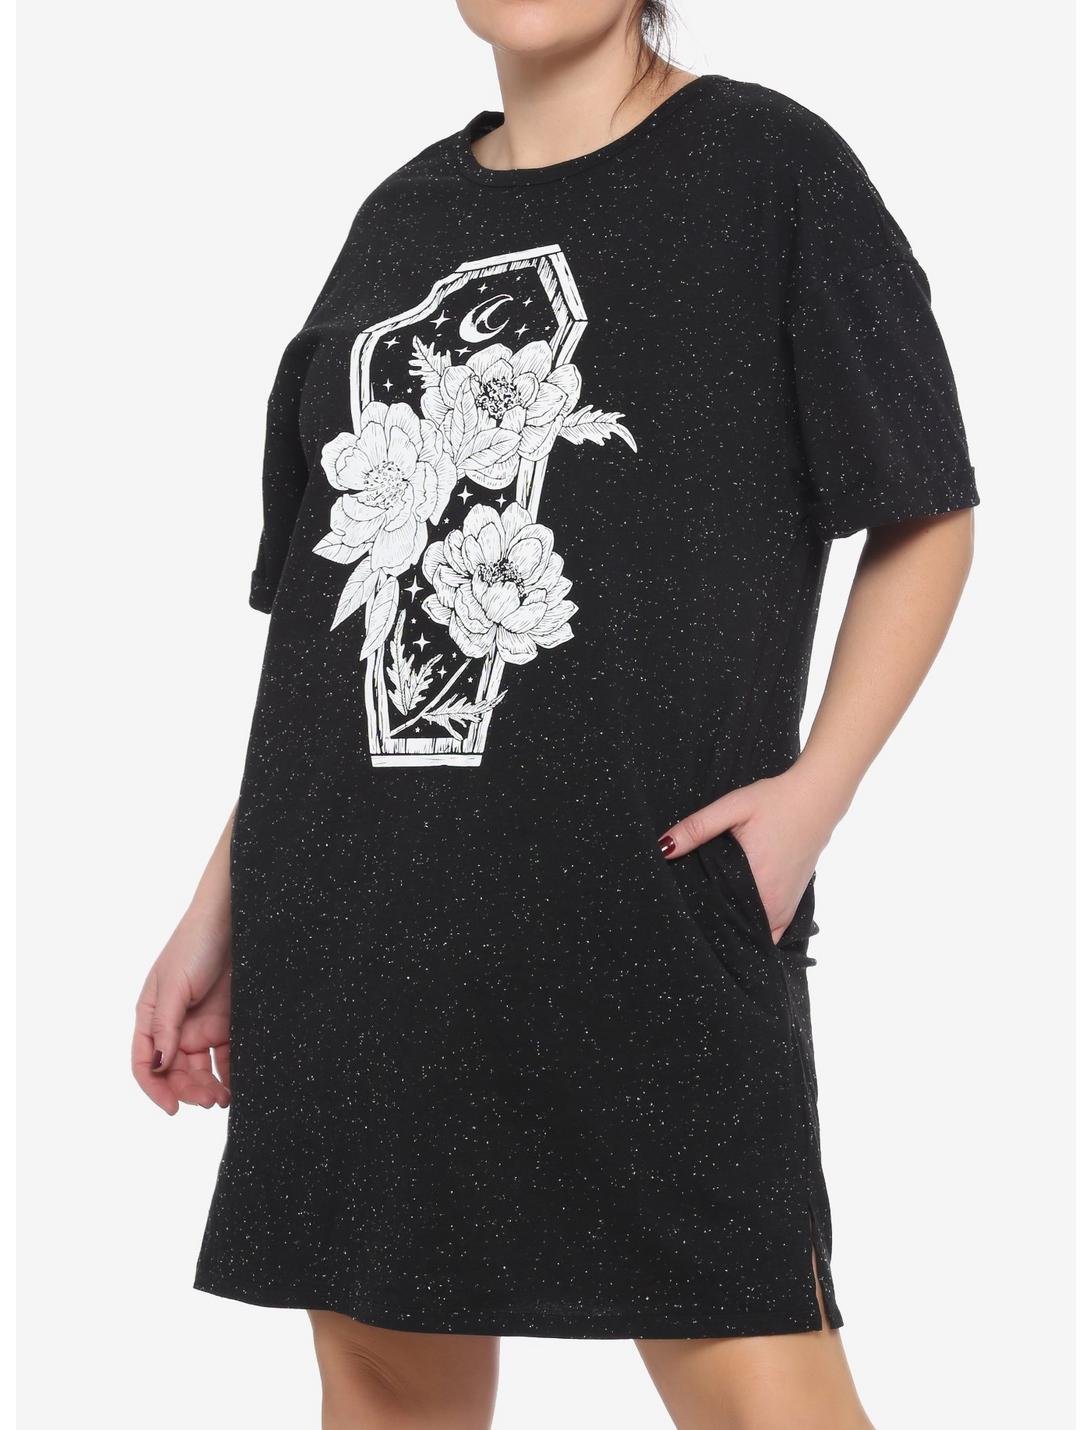 Floral Coffin Speckle T-Shirt Dress Plus Size, BLACK, hi-res